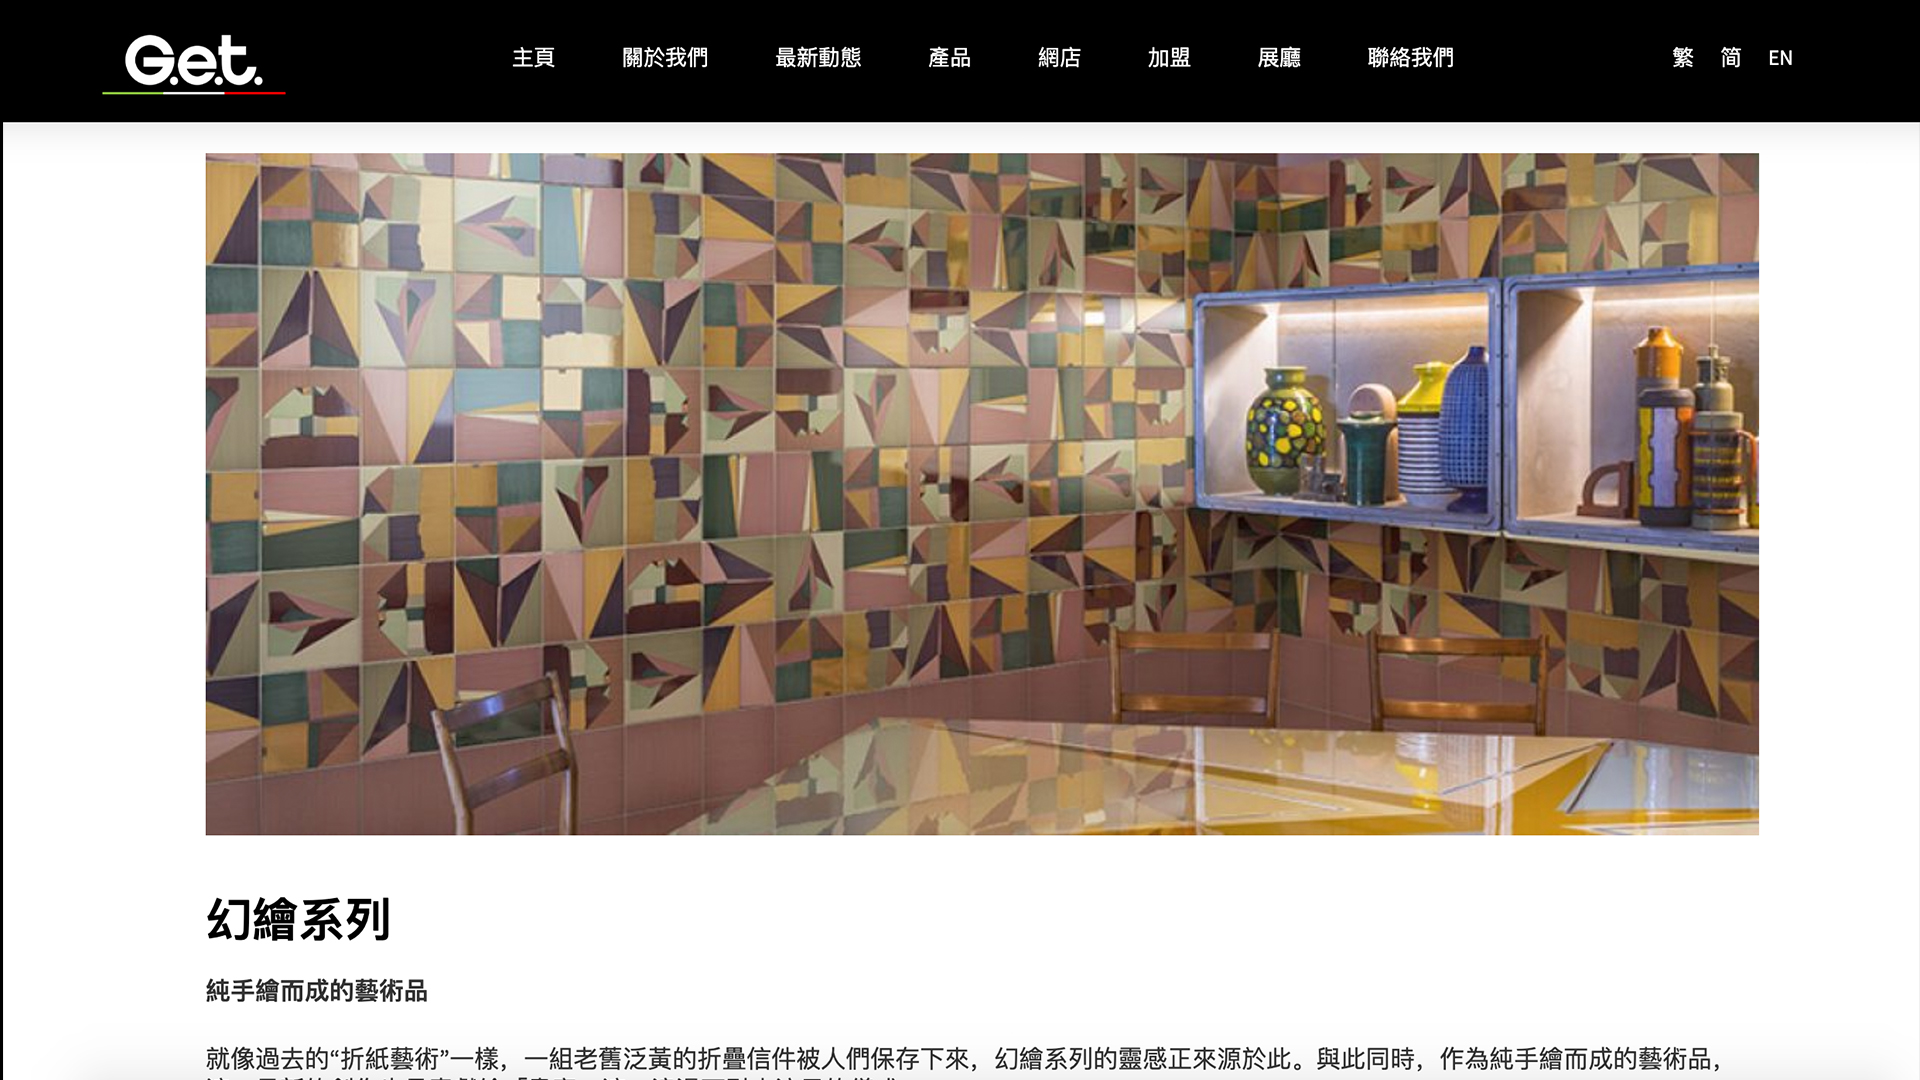 D2 Studio 品牌設計, 品牌策劃與網頁設計香港及廣州中國公司為香港與中國建材公司安排的品牌策劃與網頁設計服務3